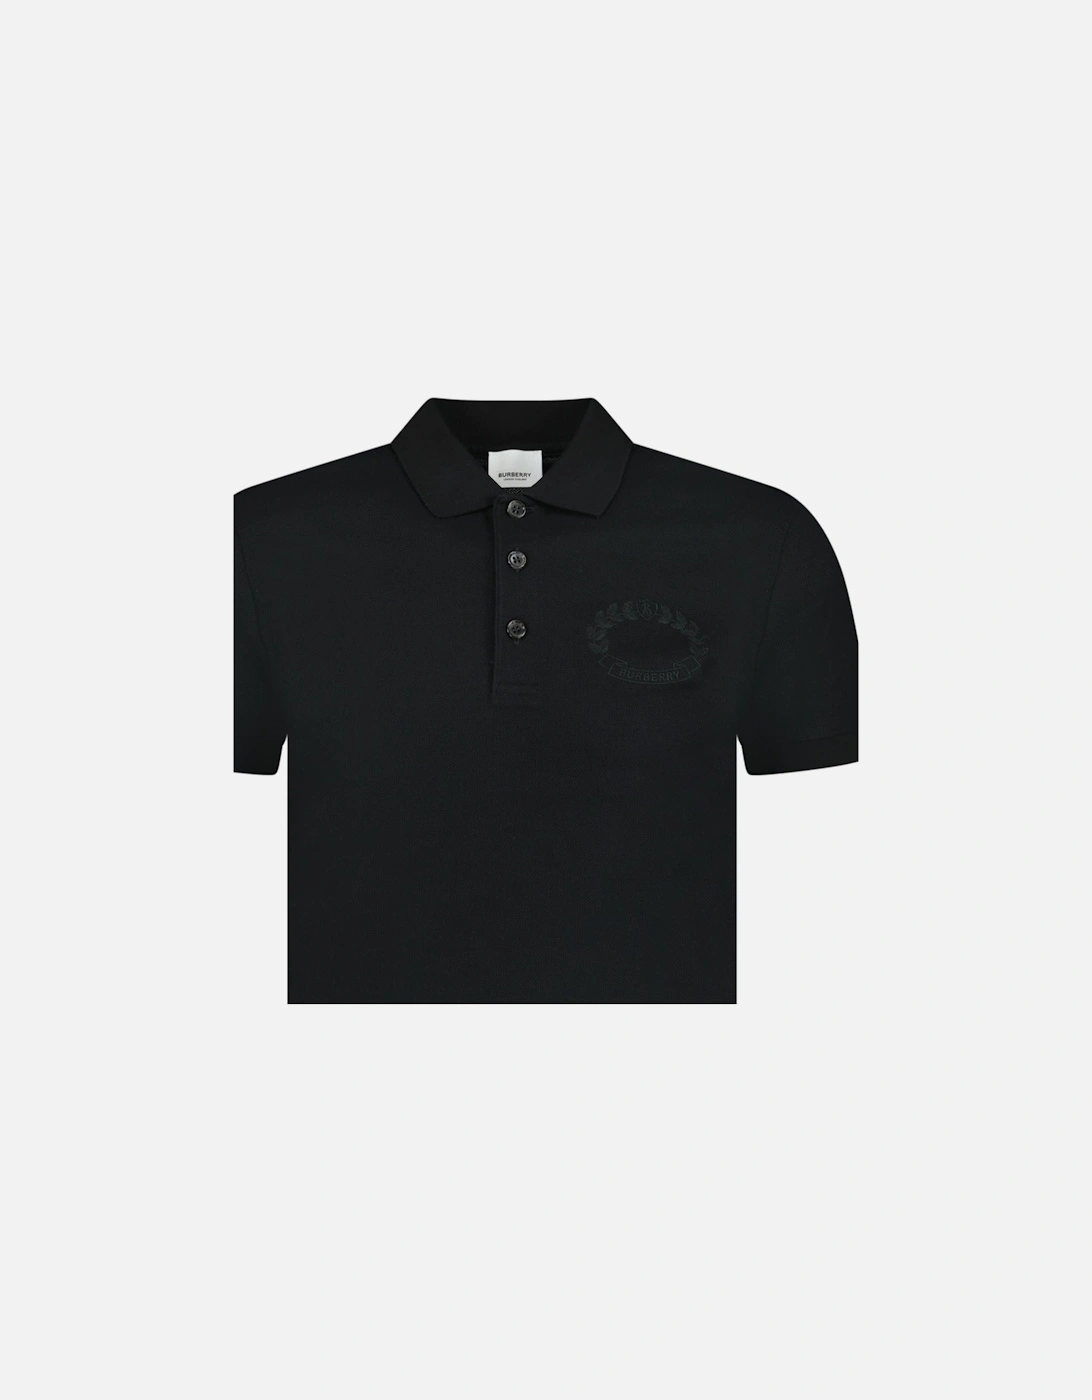 'Walworth' Crest Polo-Shirt Black